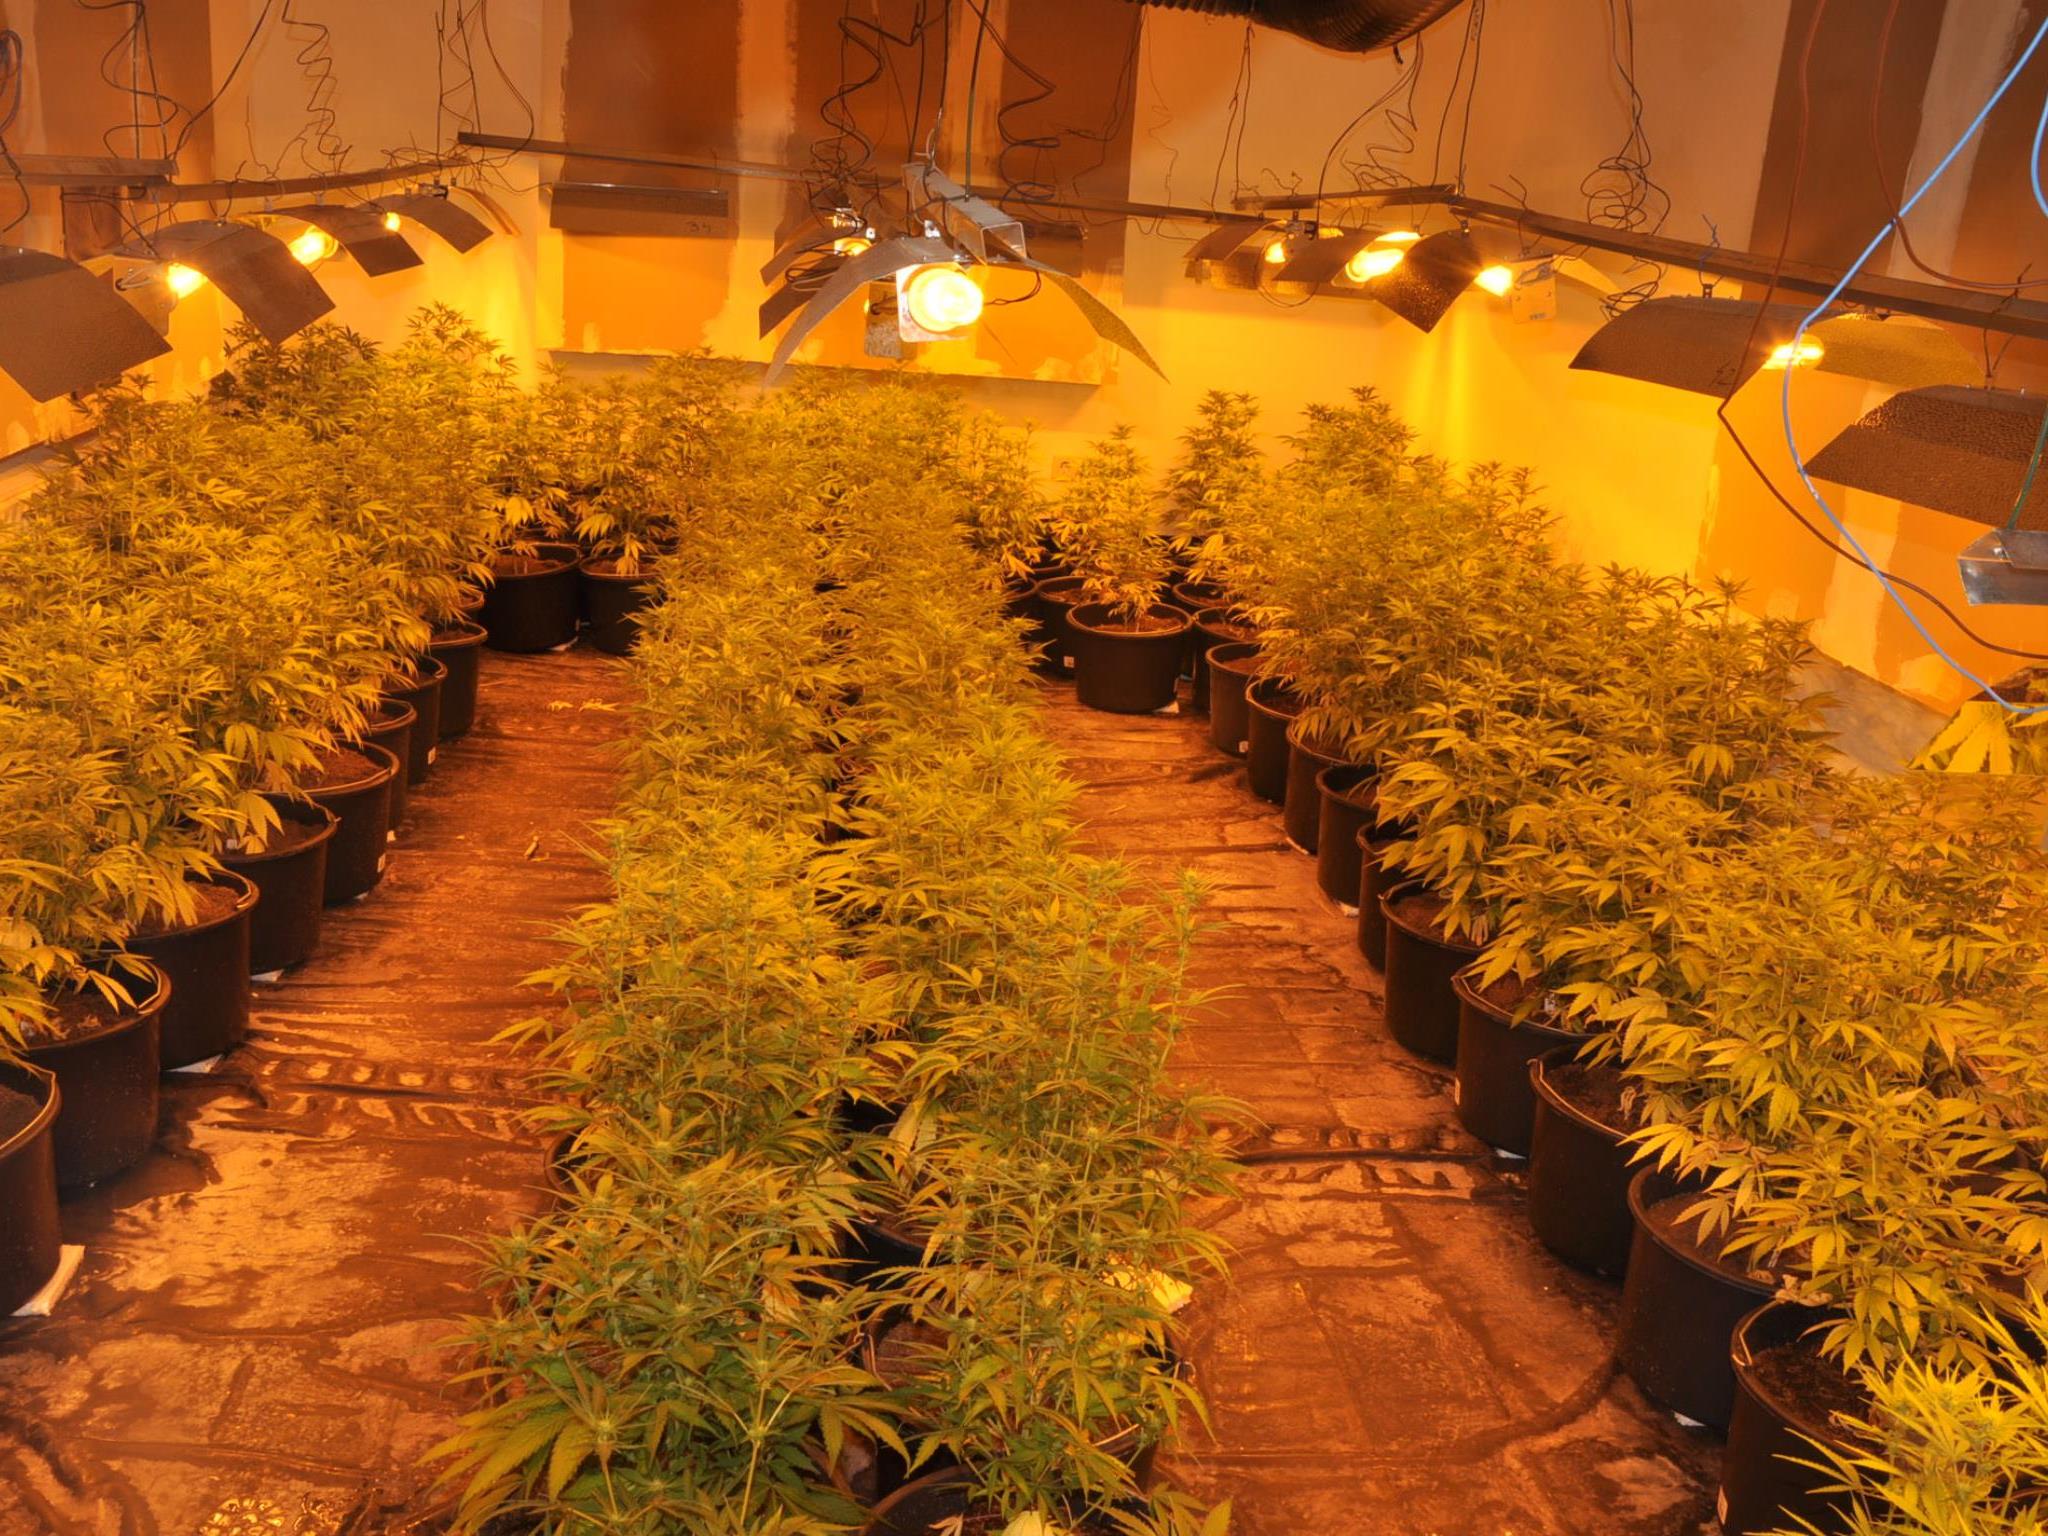 610 Cannabispflanzen konnten in Floridsdorf sichergestellt werden